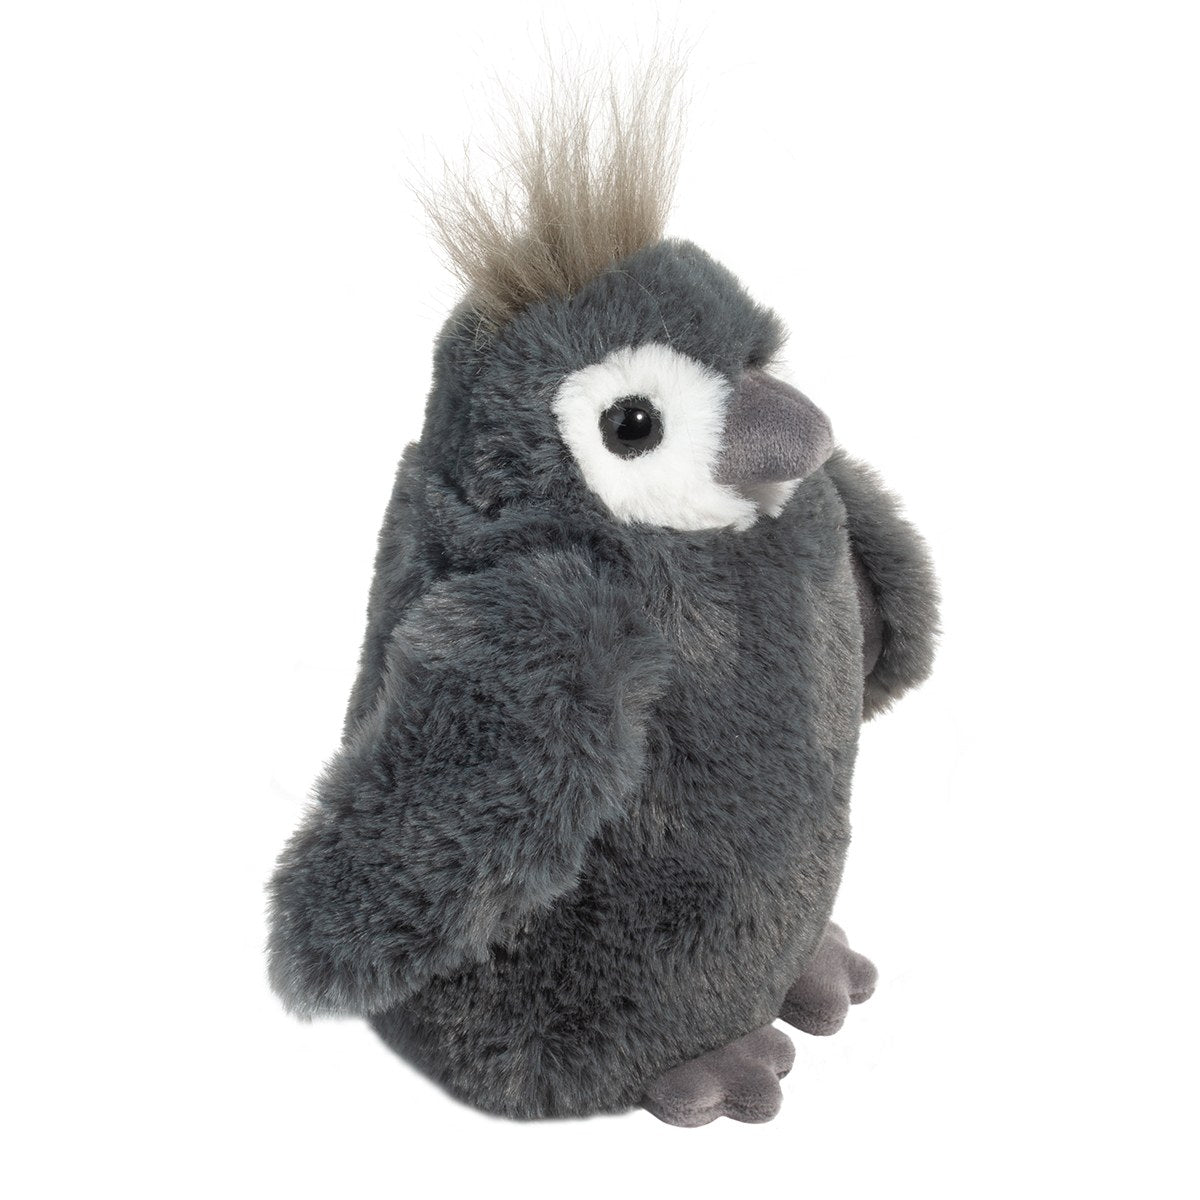 Perrie Penguin Mini Soft    